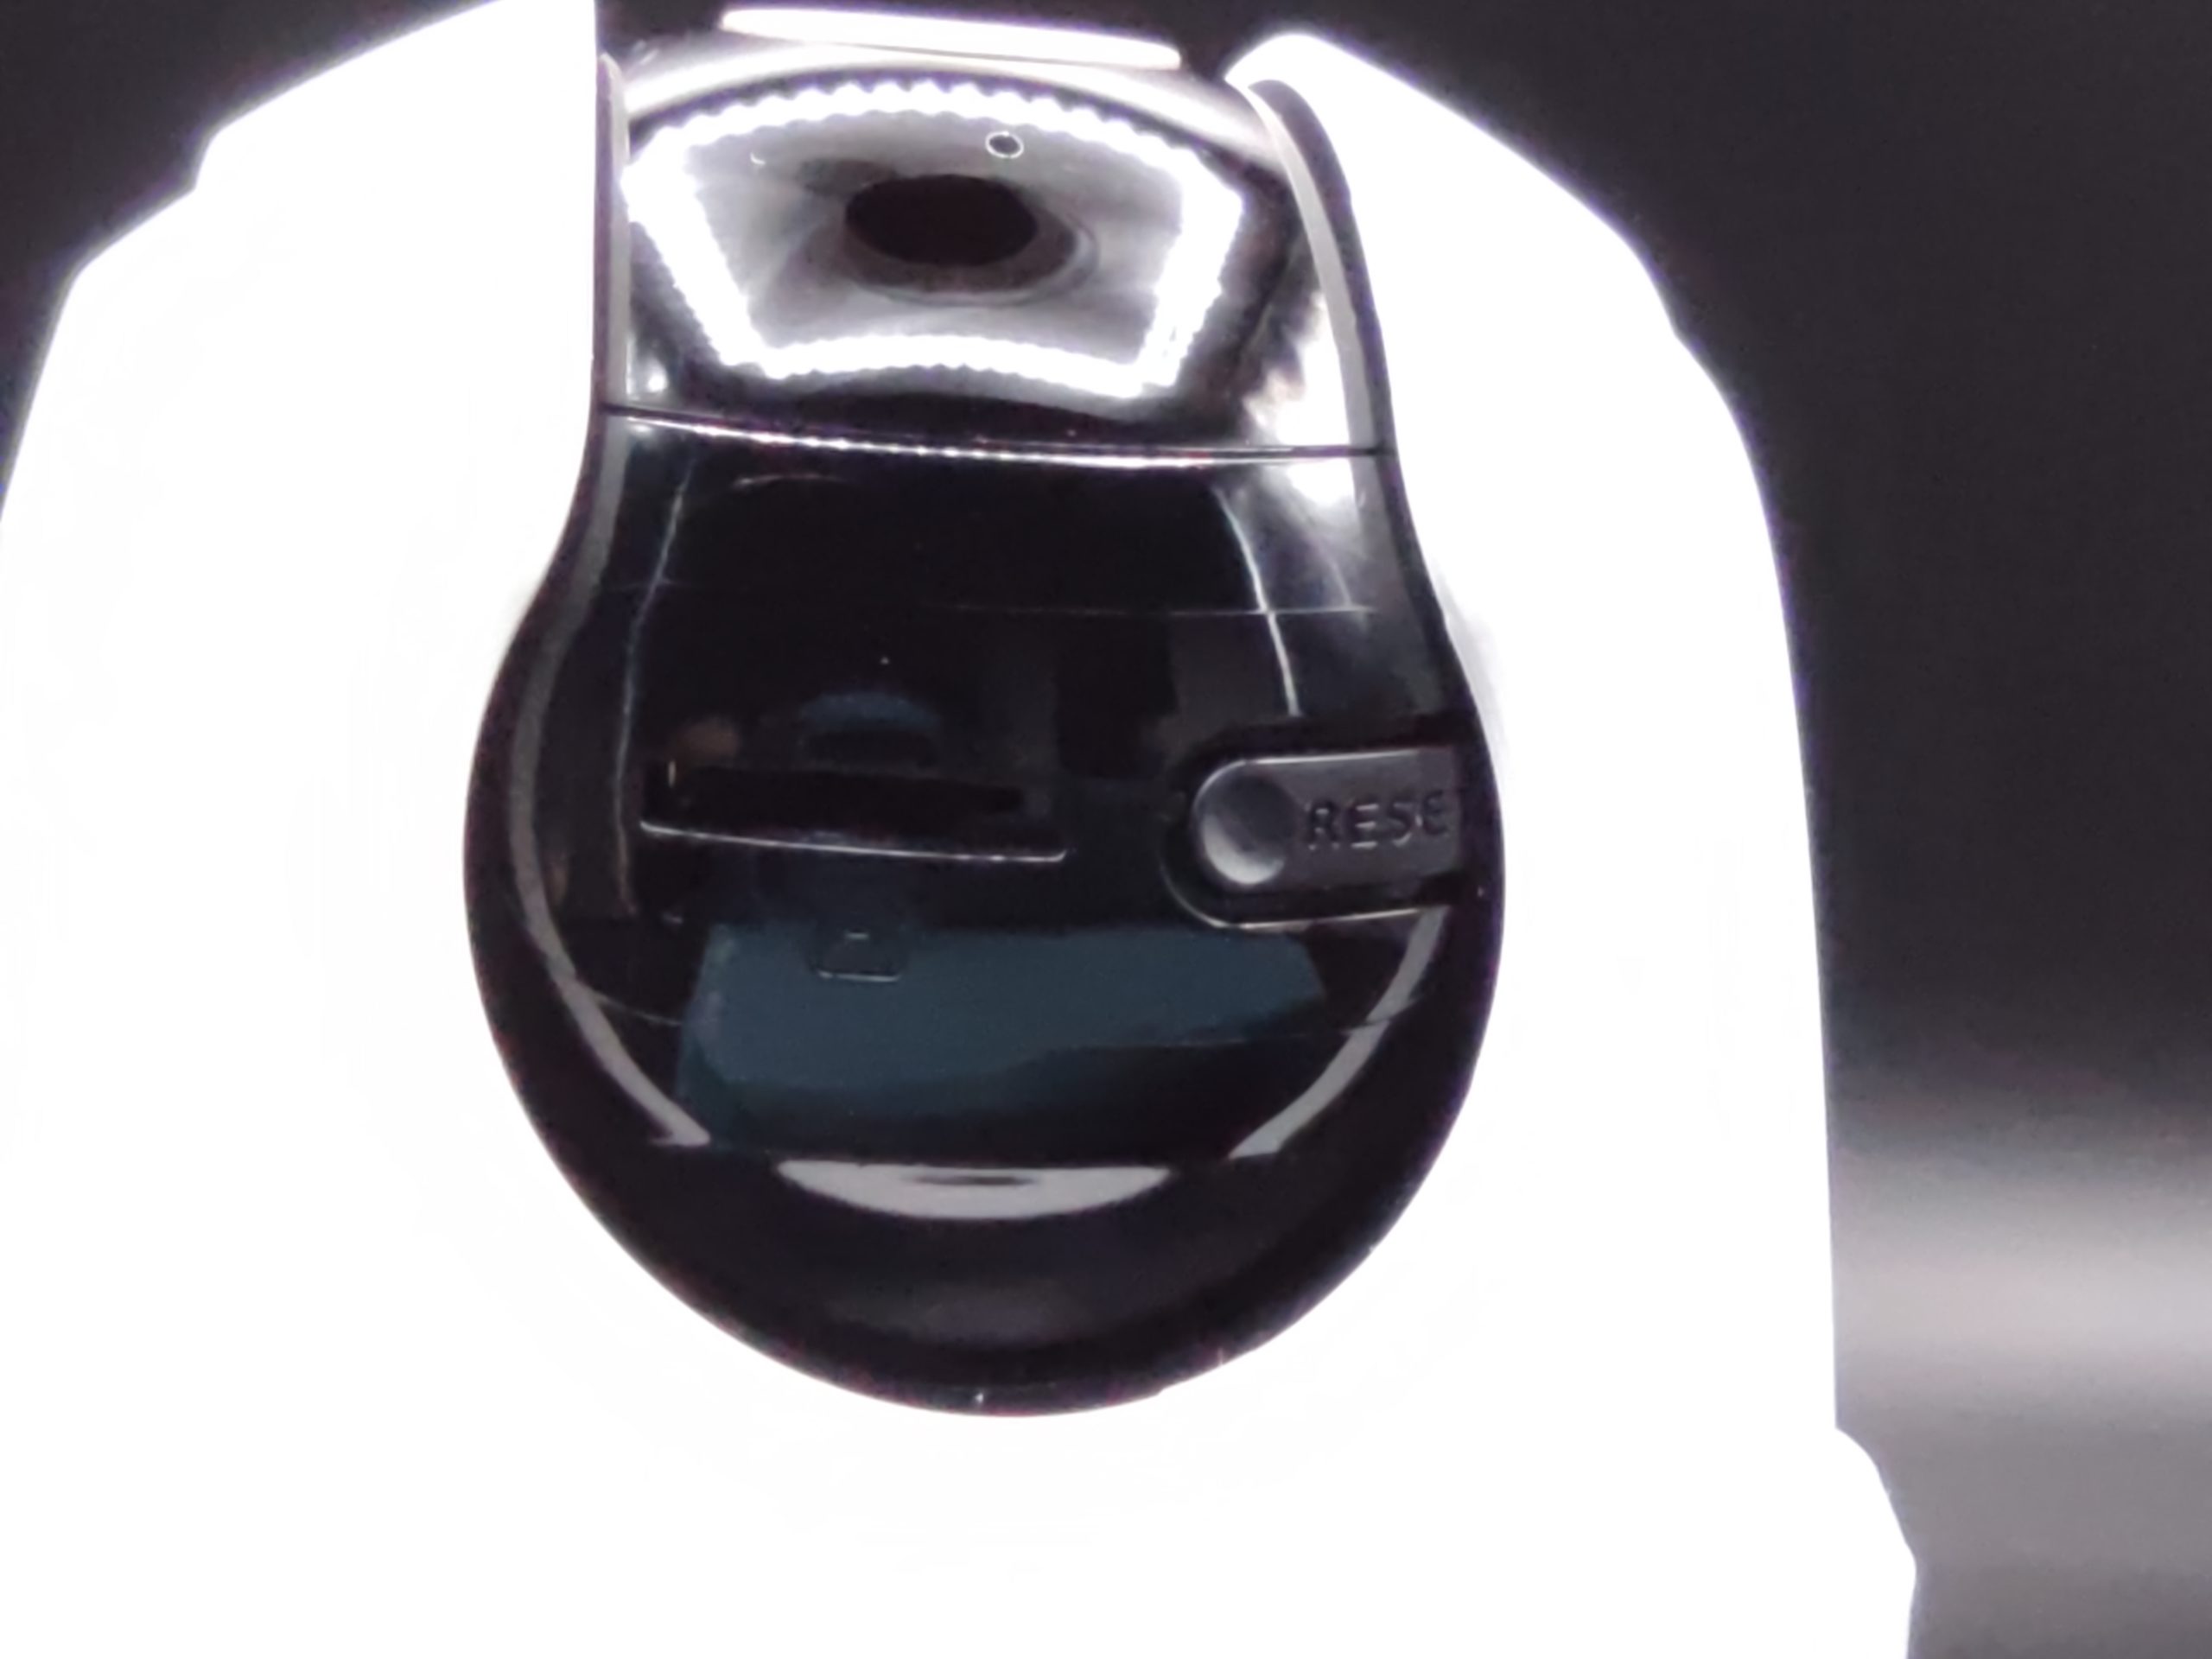 Test Imou Ranger SE : une petite caméra pan tilt efficace – Les Alexiens